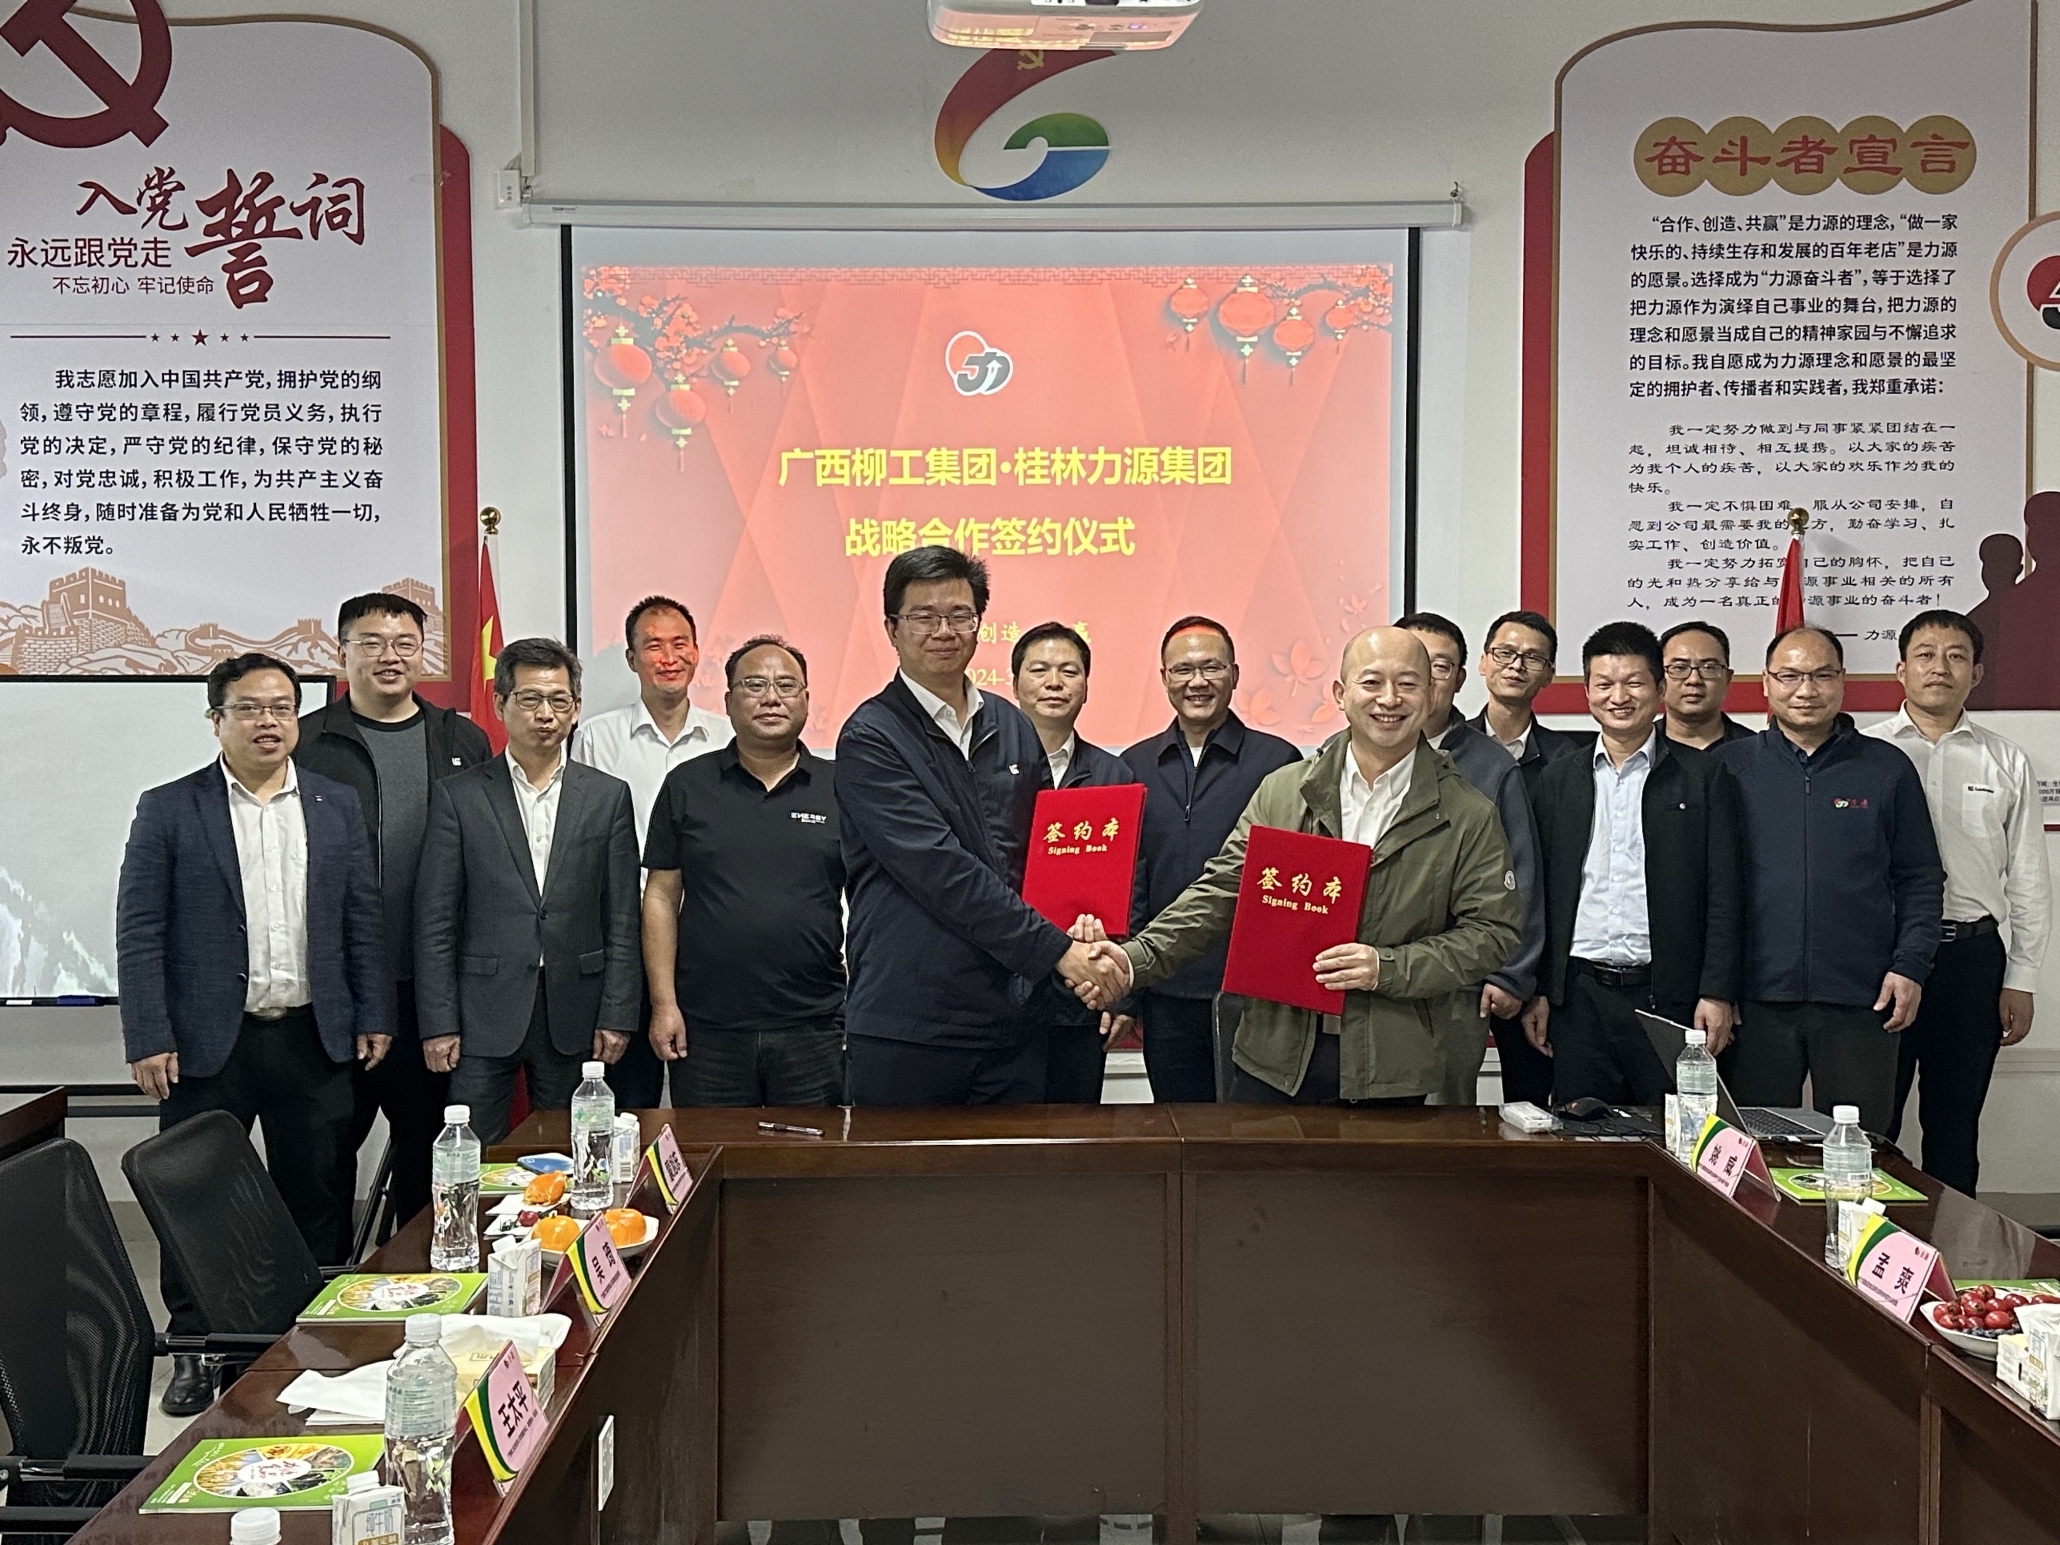 柳工食品公司与桂林力源集团签署战略合作协议